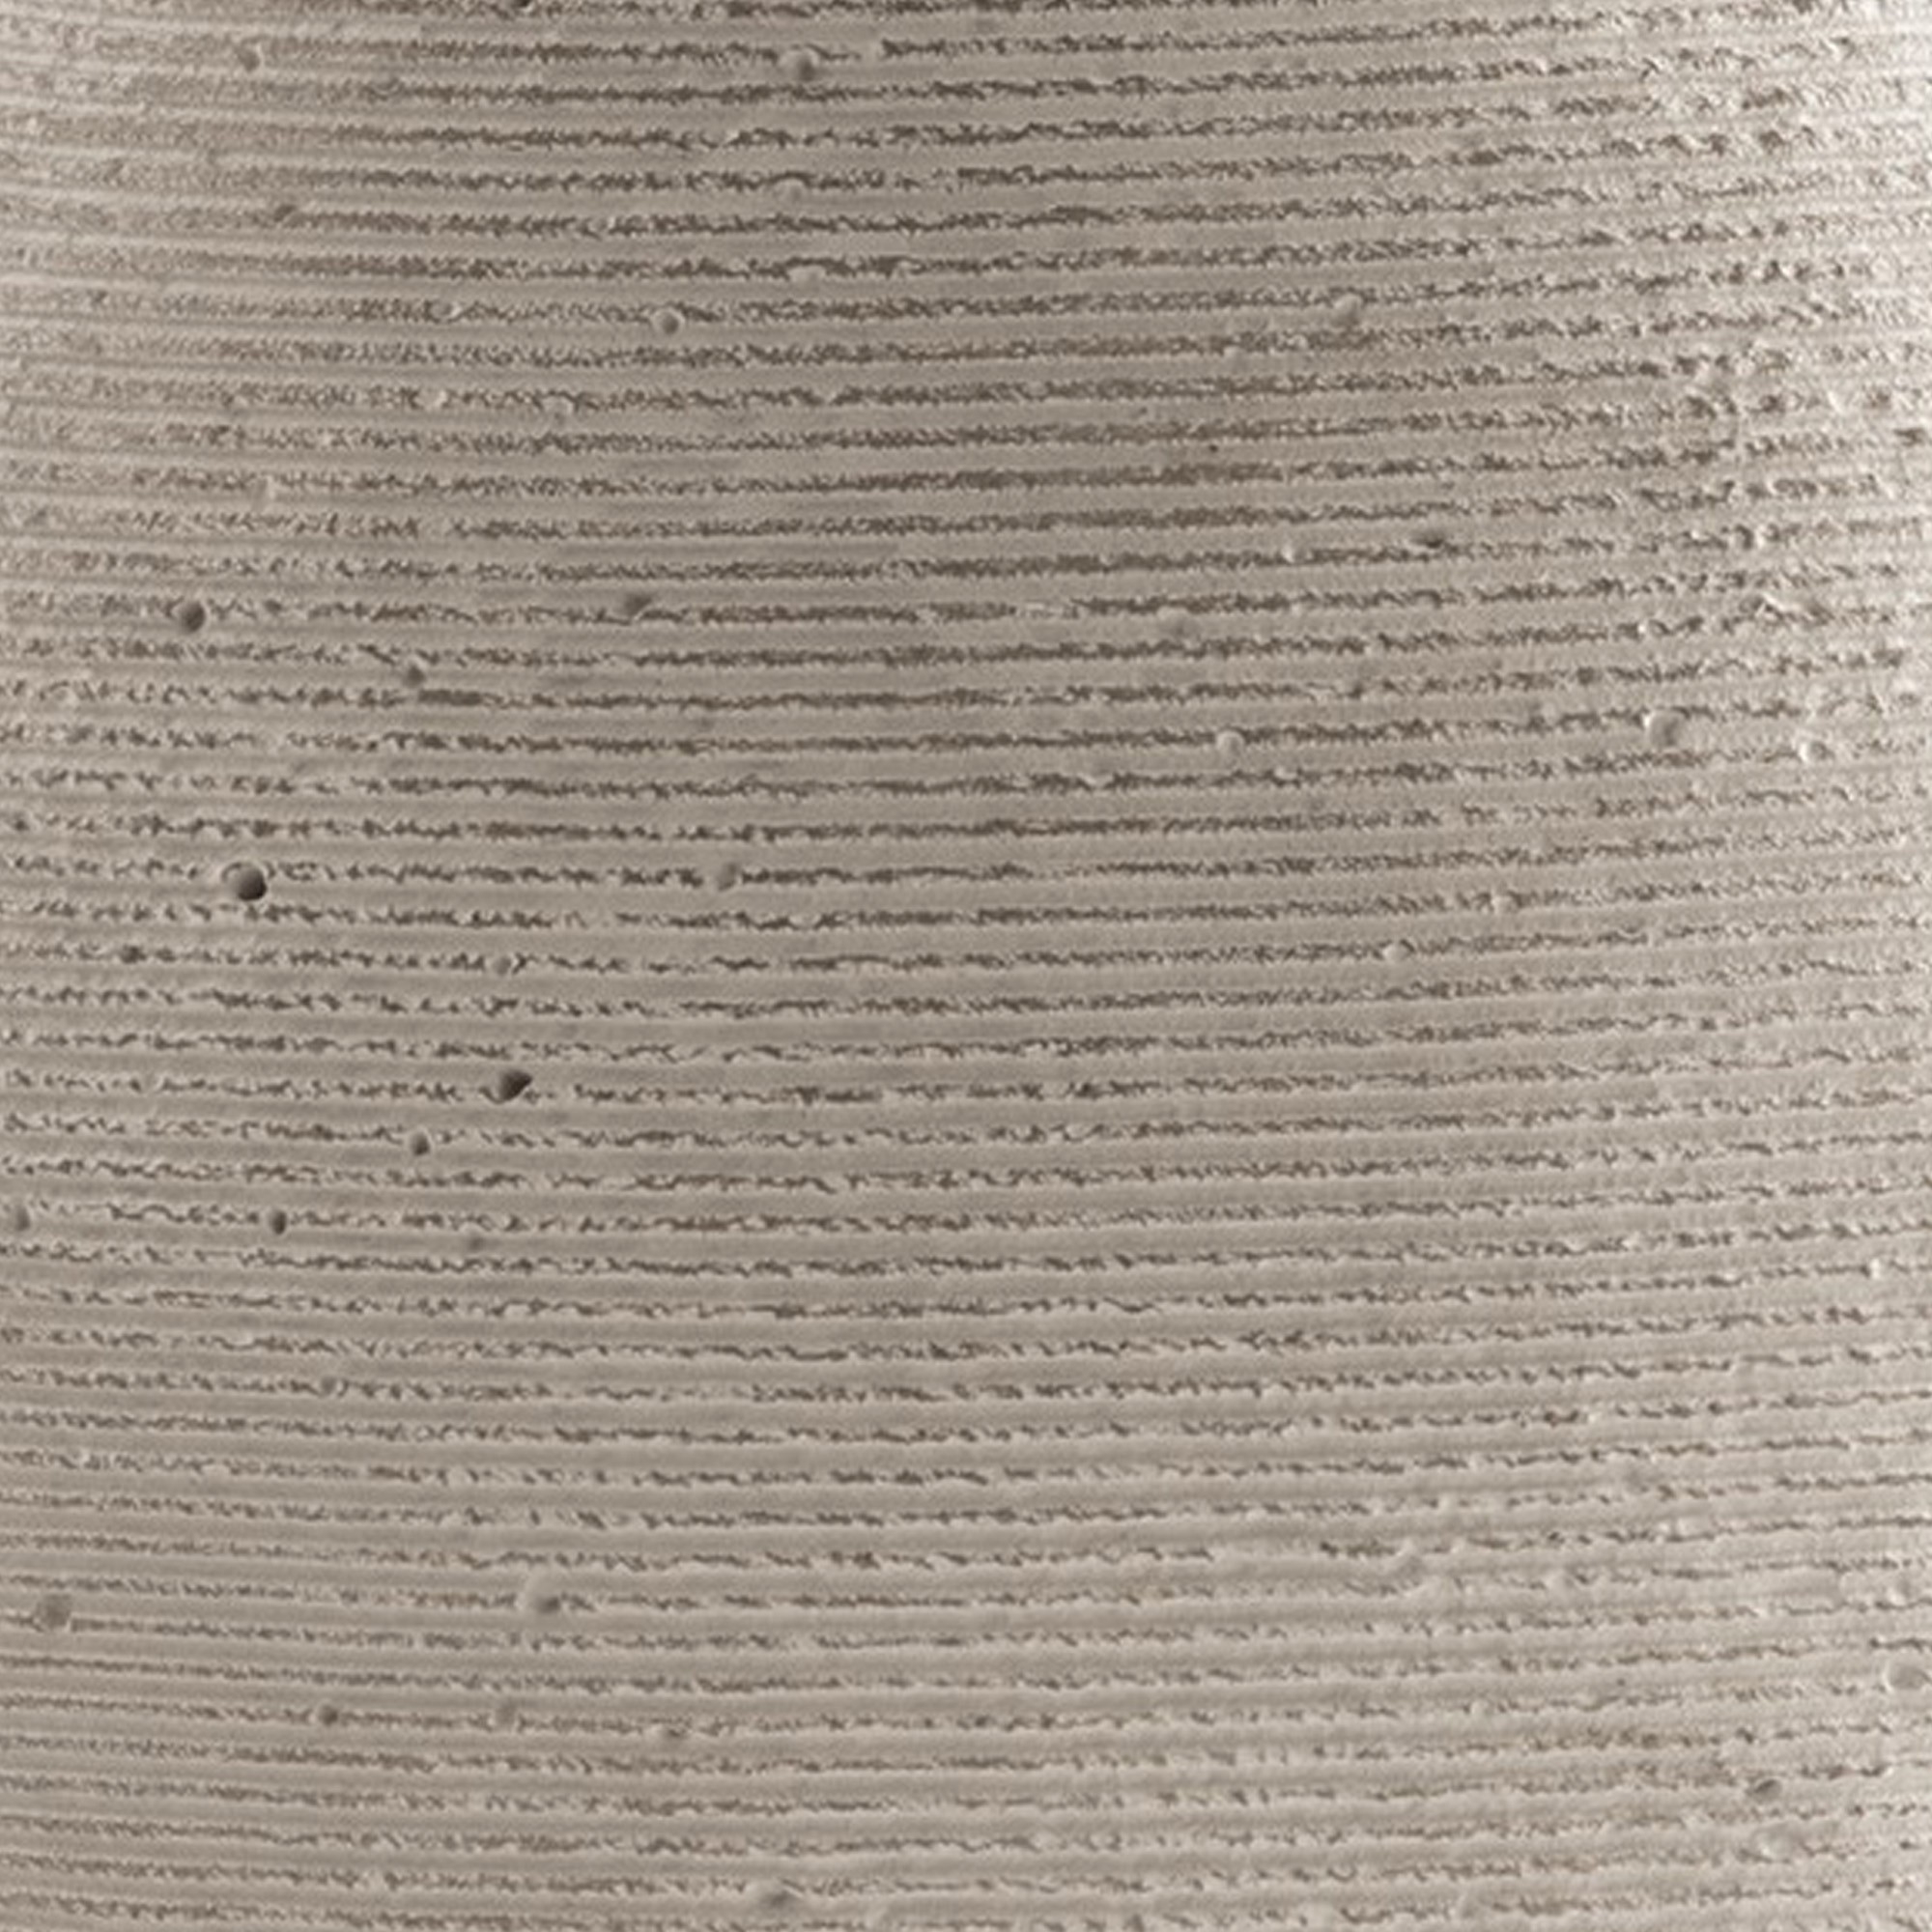 Dale 12 Inch Round Polyresin Vase, Wavy Ribbed Spiral Texture Antique Beige- Saltoro Sherpi